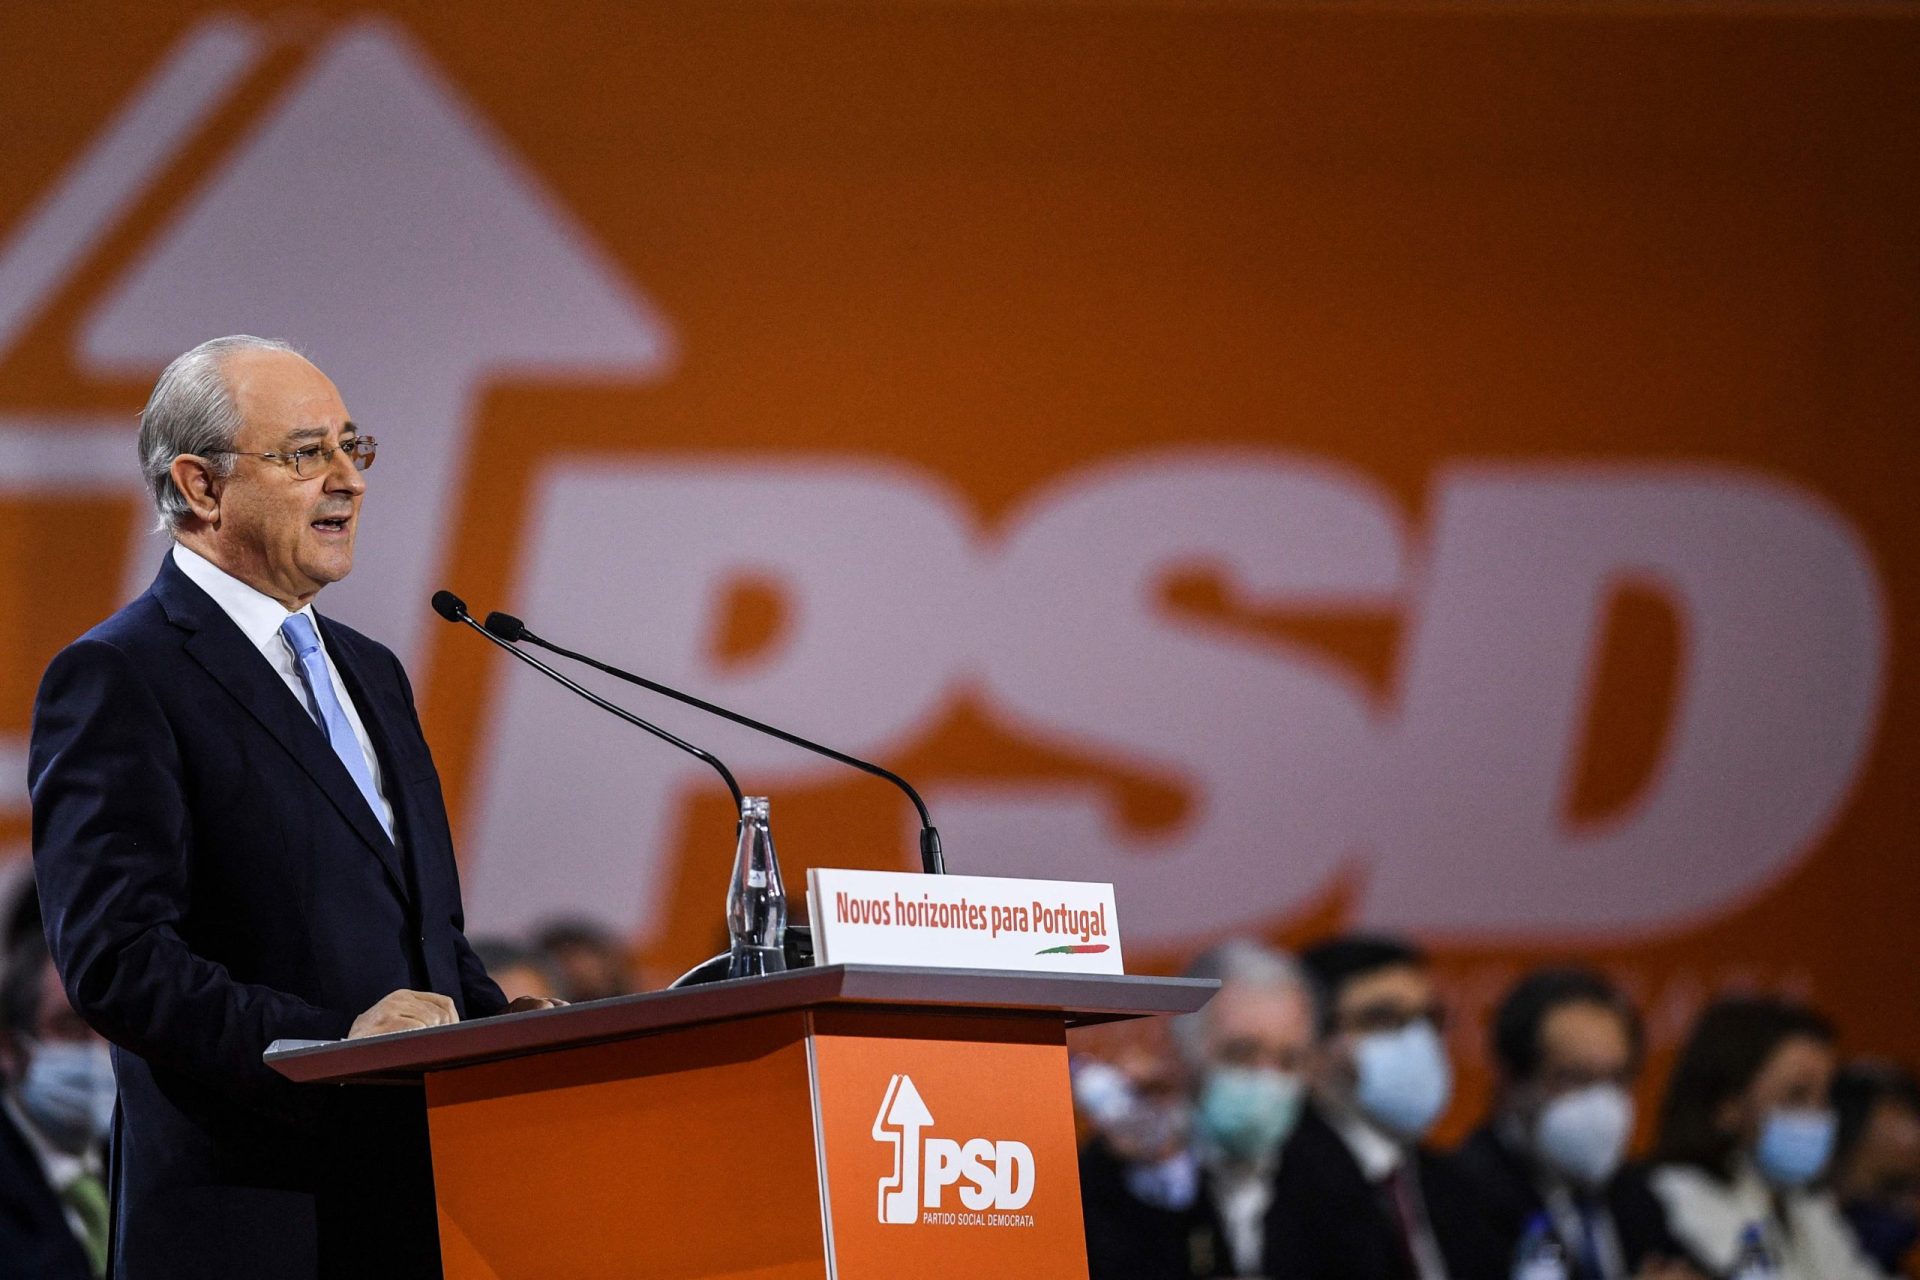 PSD precisa de &#8220;tranquilidade&#8221; e &#8220;serenidade&#8221; até às próximas eleições diretas, diz Rui Rio